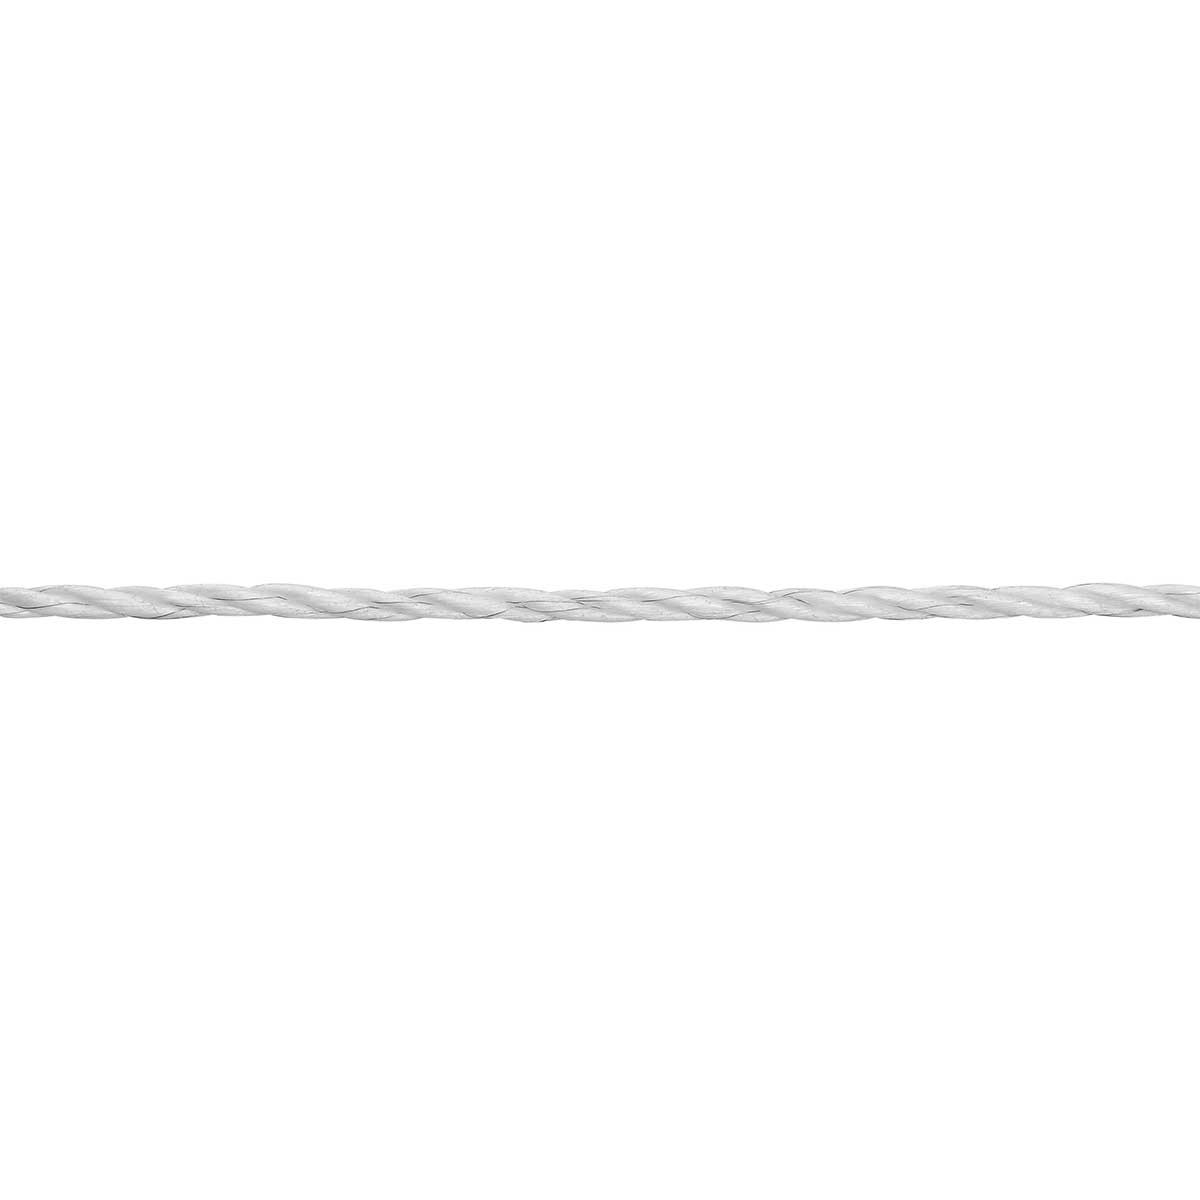 Corde de clôture électrique AKO EconomyLine 200 m, Ø 6 mm, 6x0.20 acier inoxydable, blanc